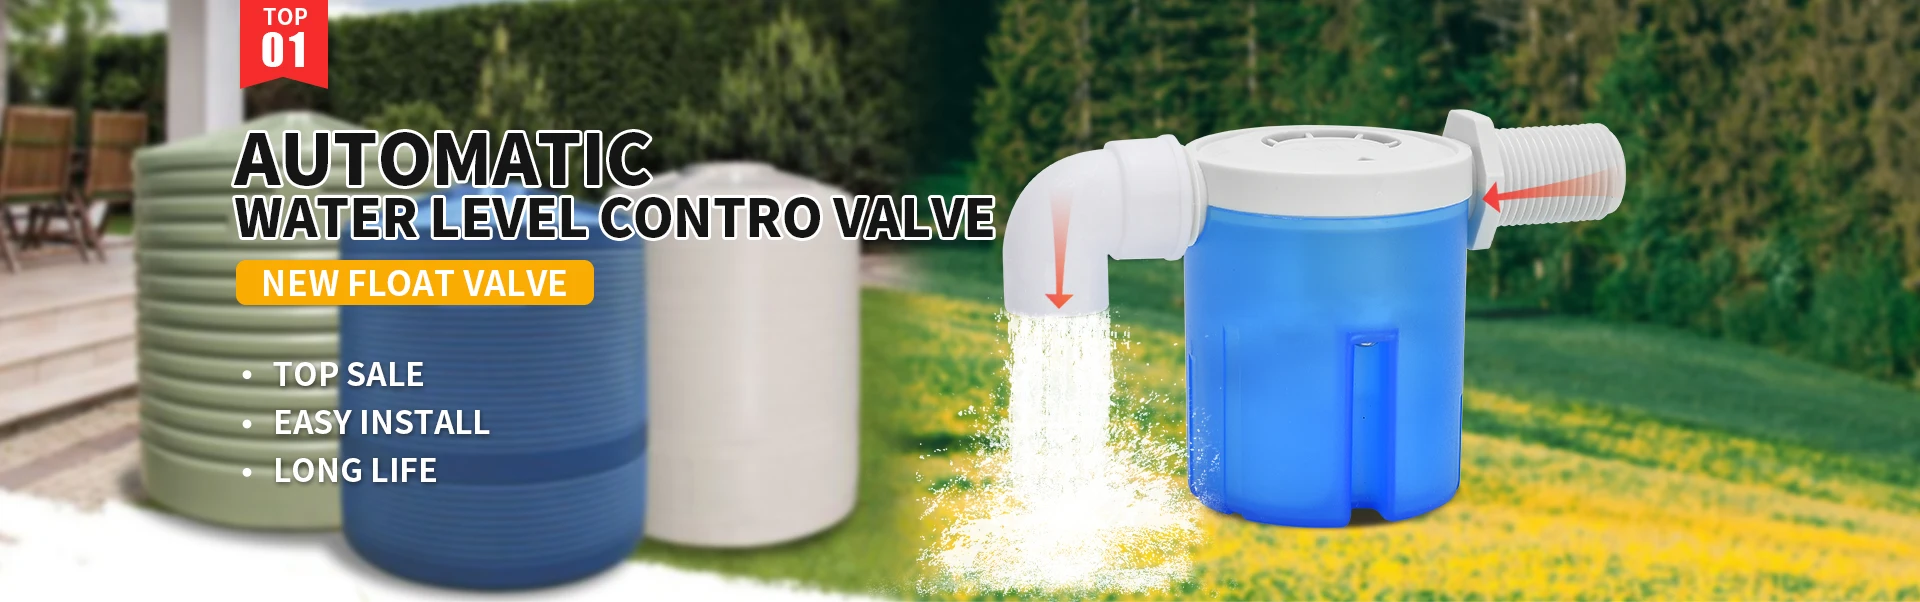 water level control valve description